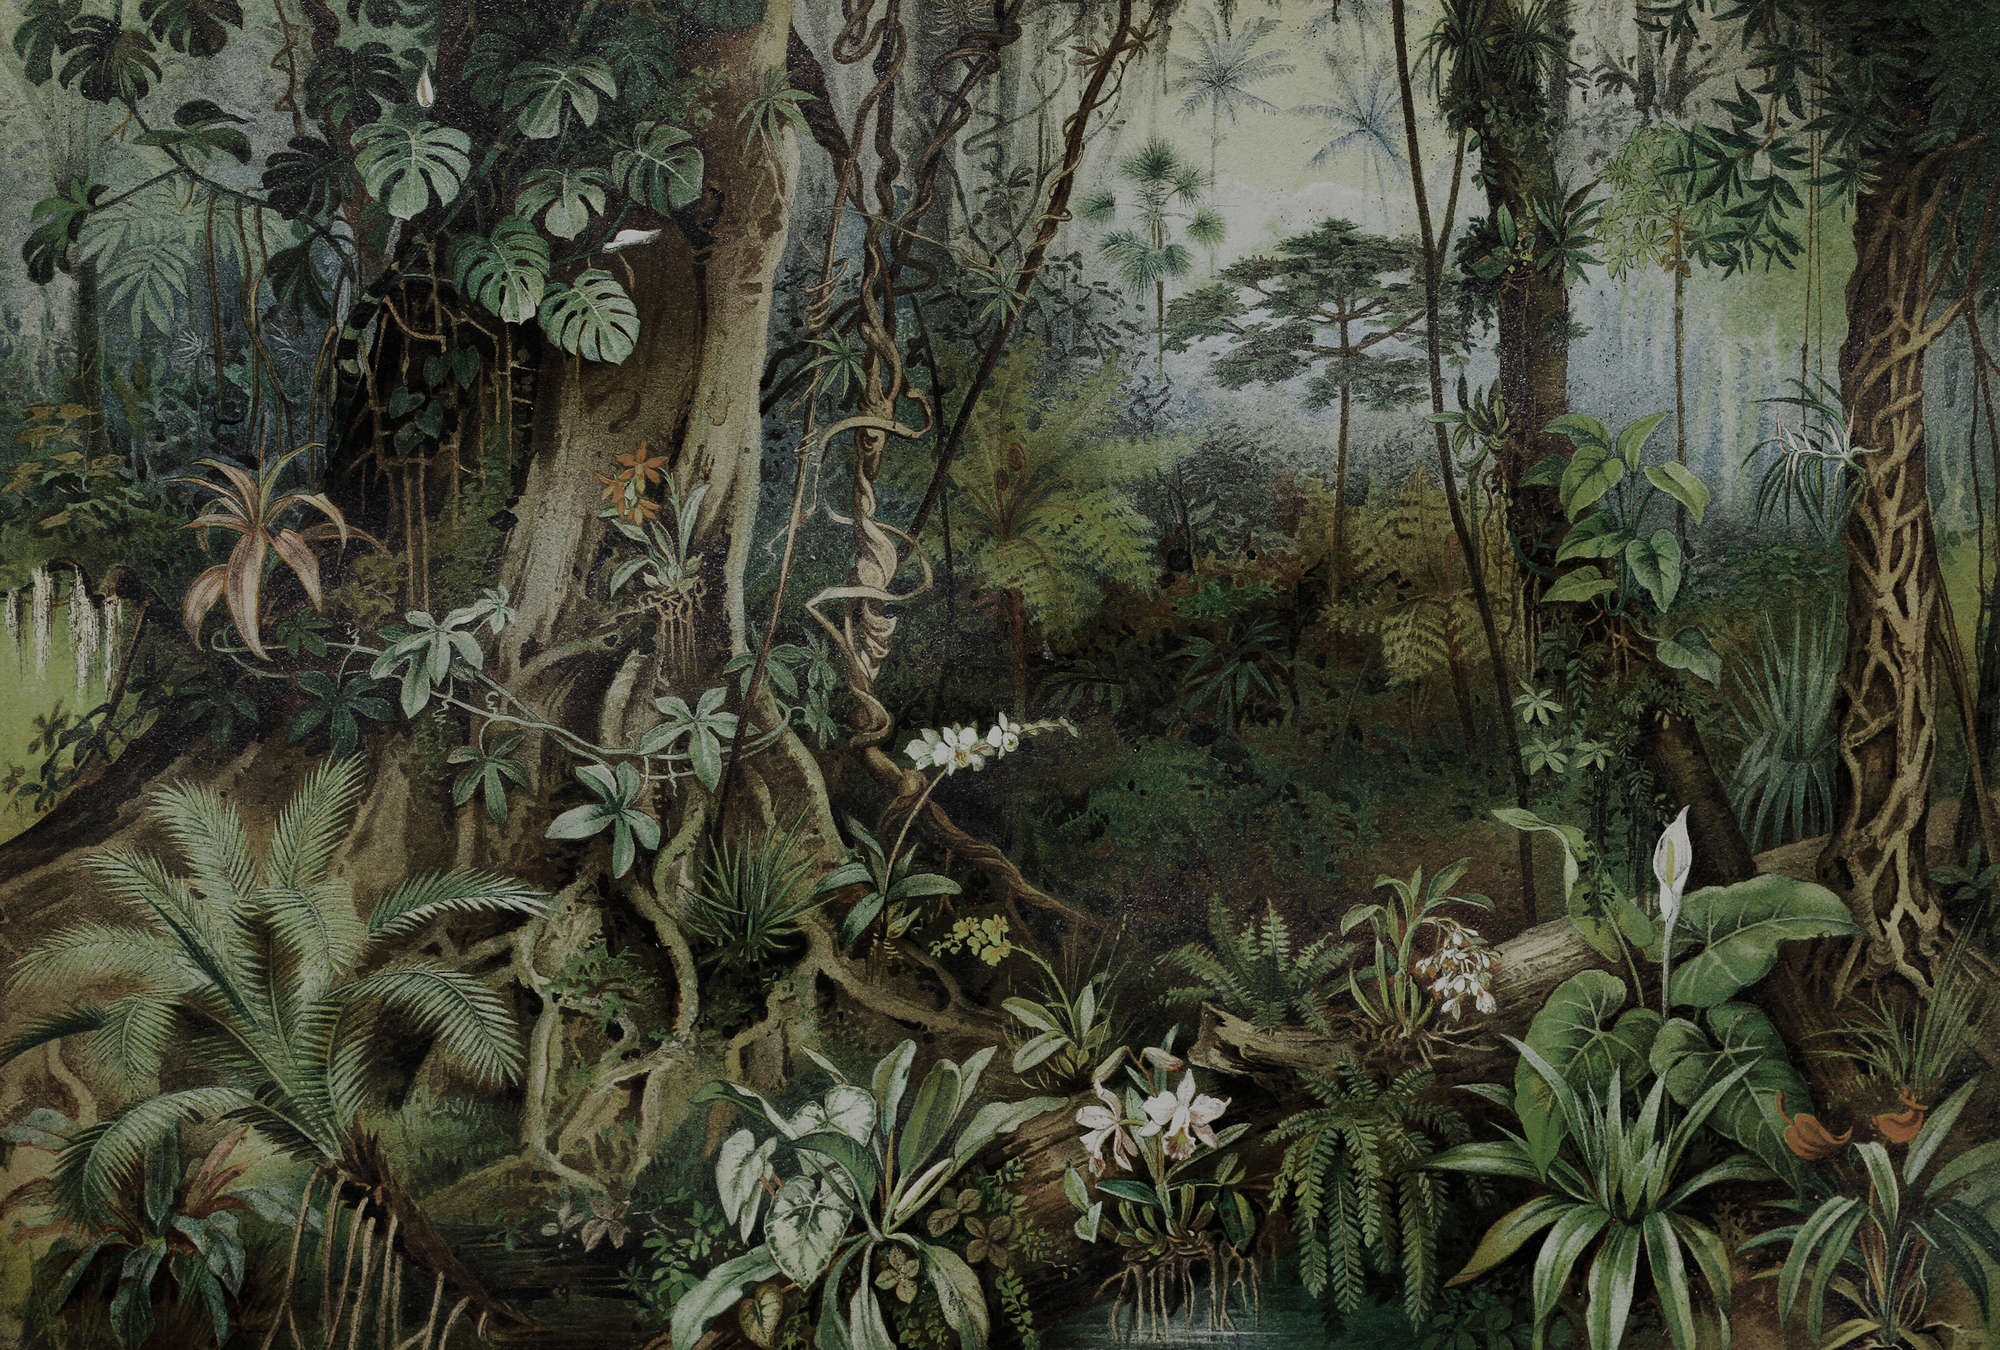             Dschungel Fototapete im Zeichenstil – Walls by Patel
        